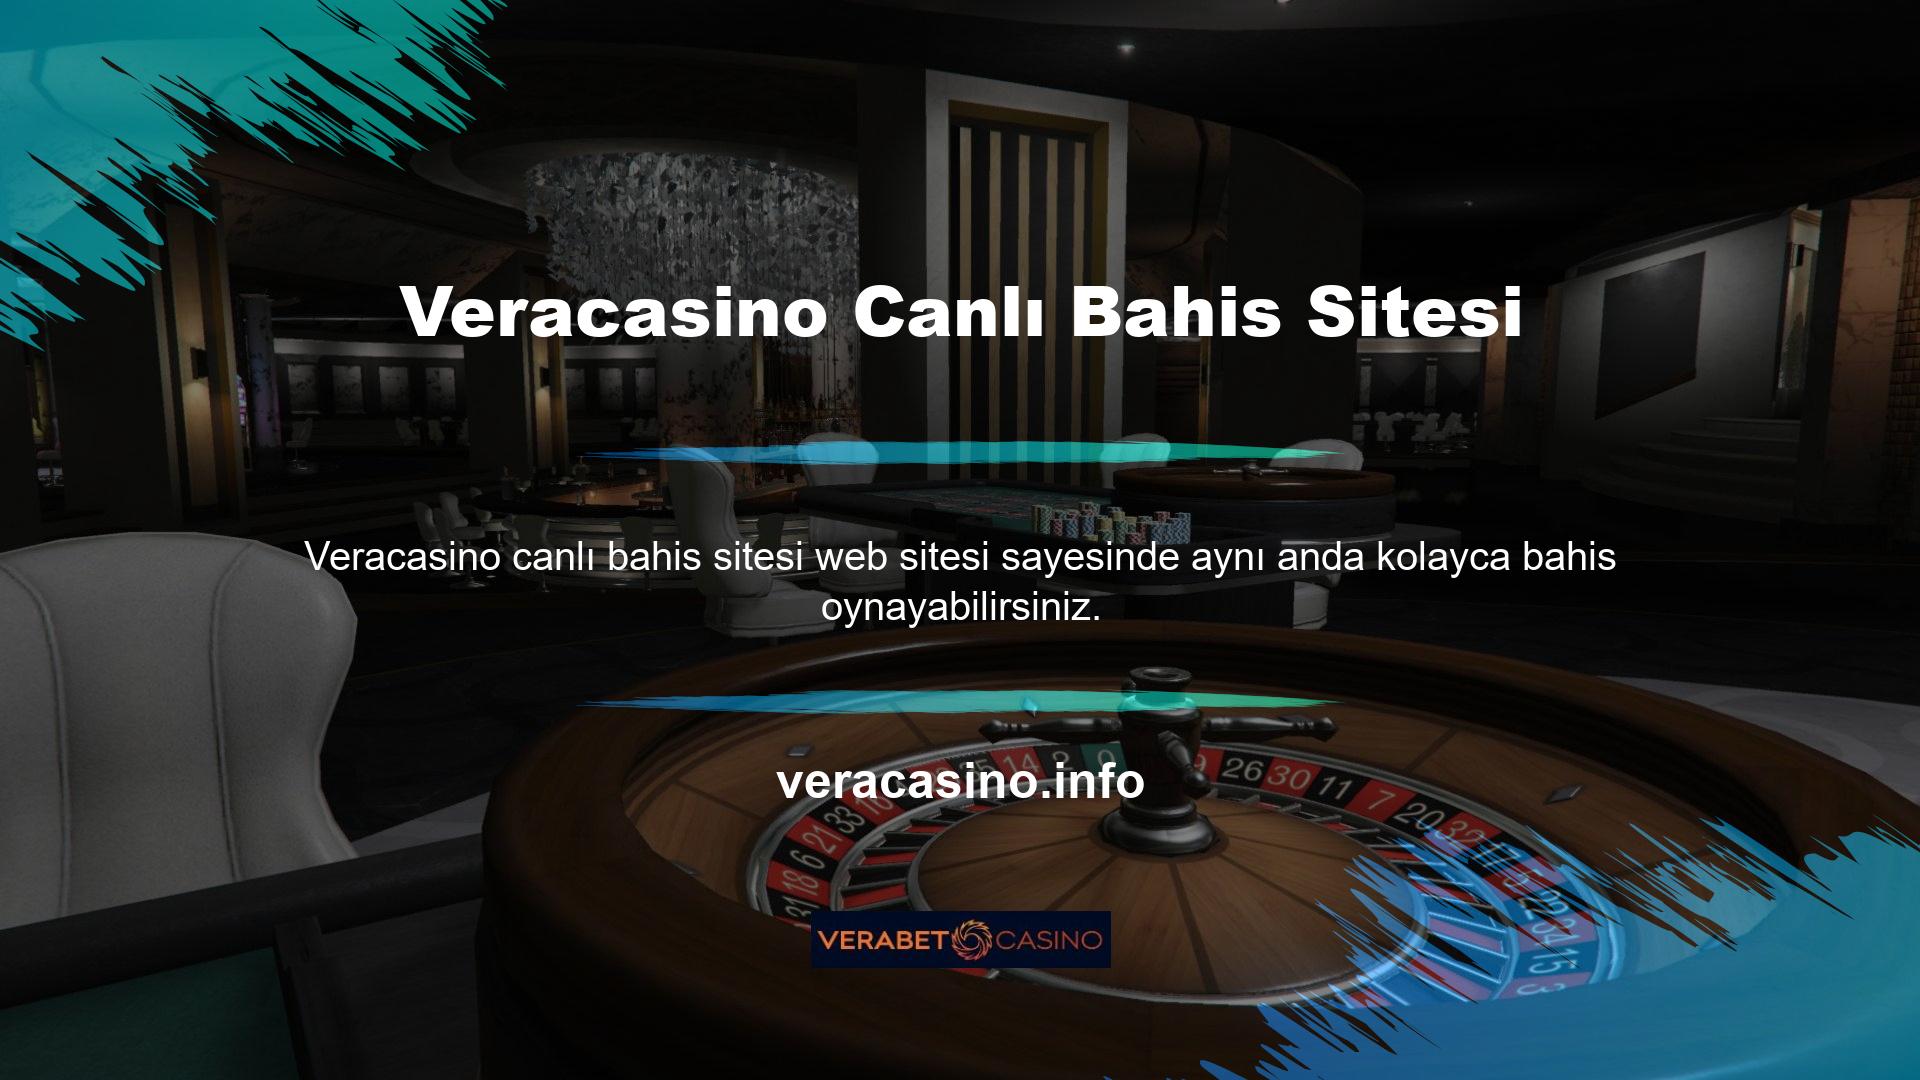 Veracasino, canlı bahis ve ücretsiz maç yayını sunan web sitelerinden biridir